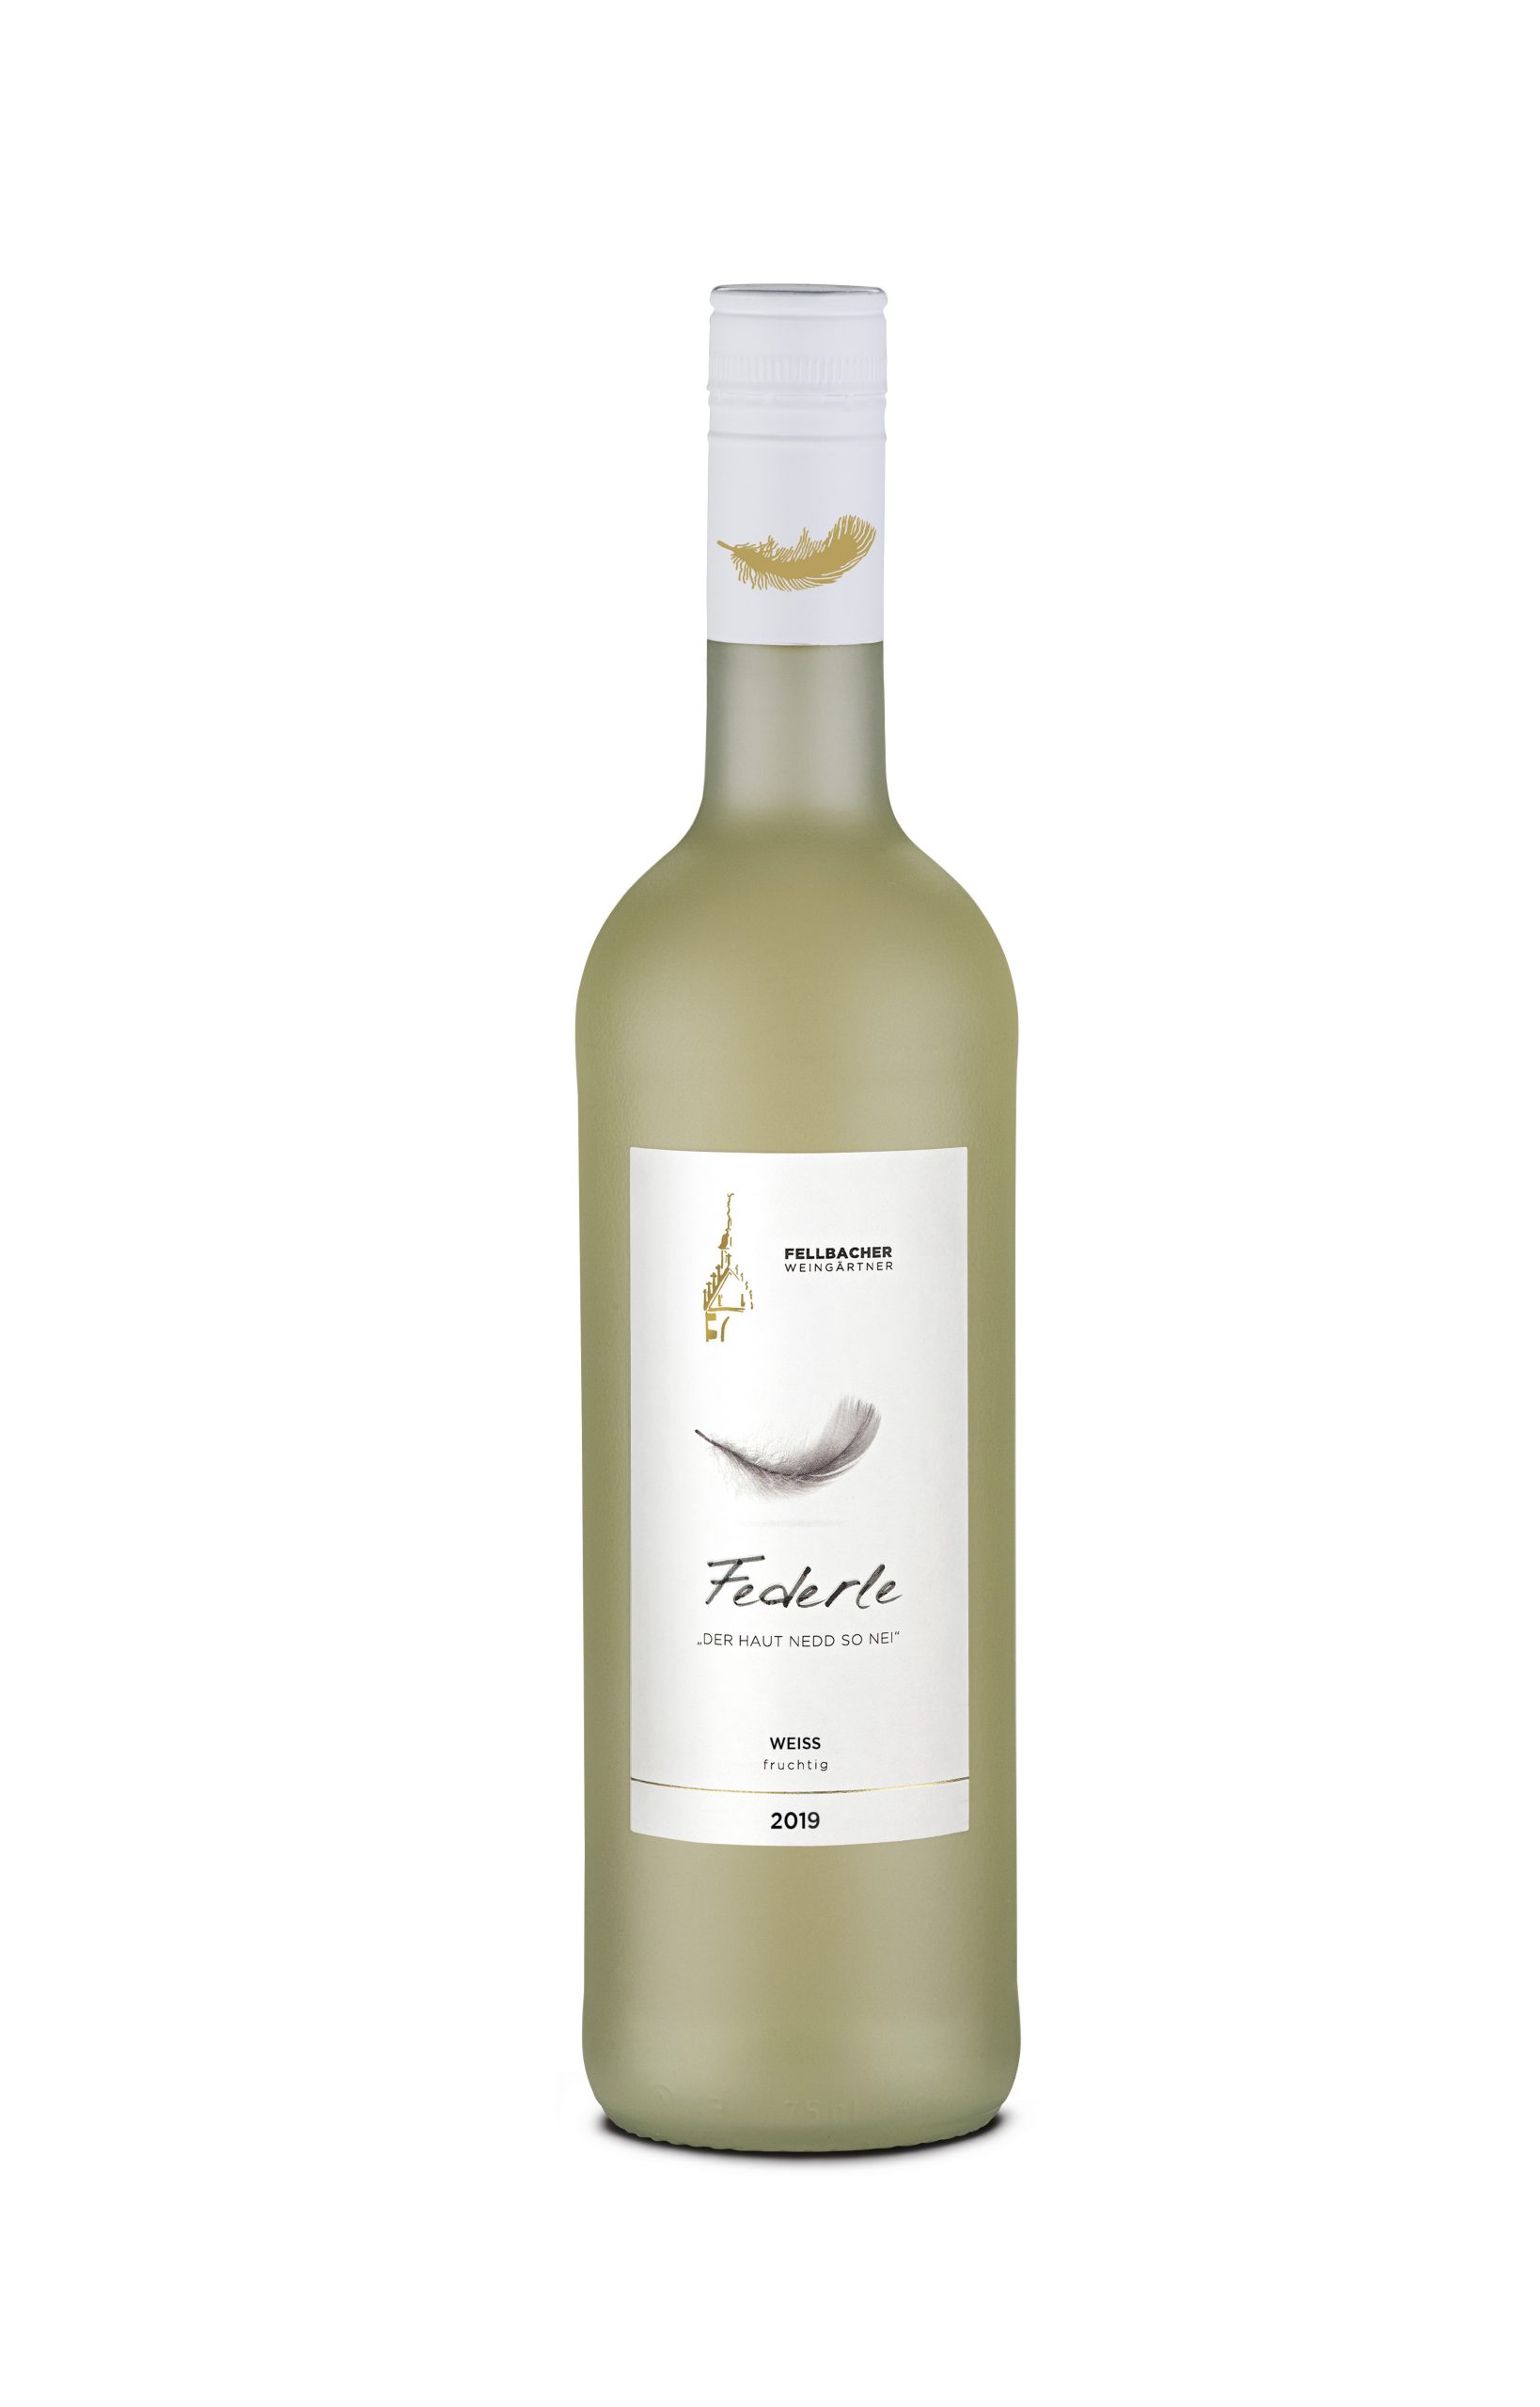 Wein mit moderatem Alkoholgehalt: Flaschenansicht des Federle weiß fruchtig der Fellbacher Weingärtner